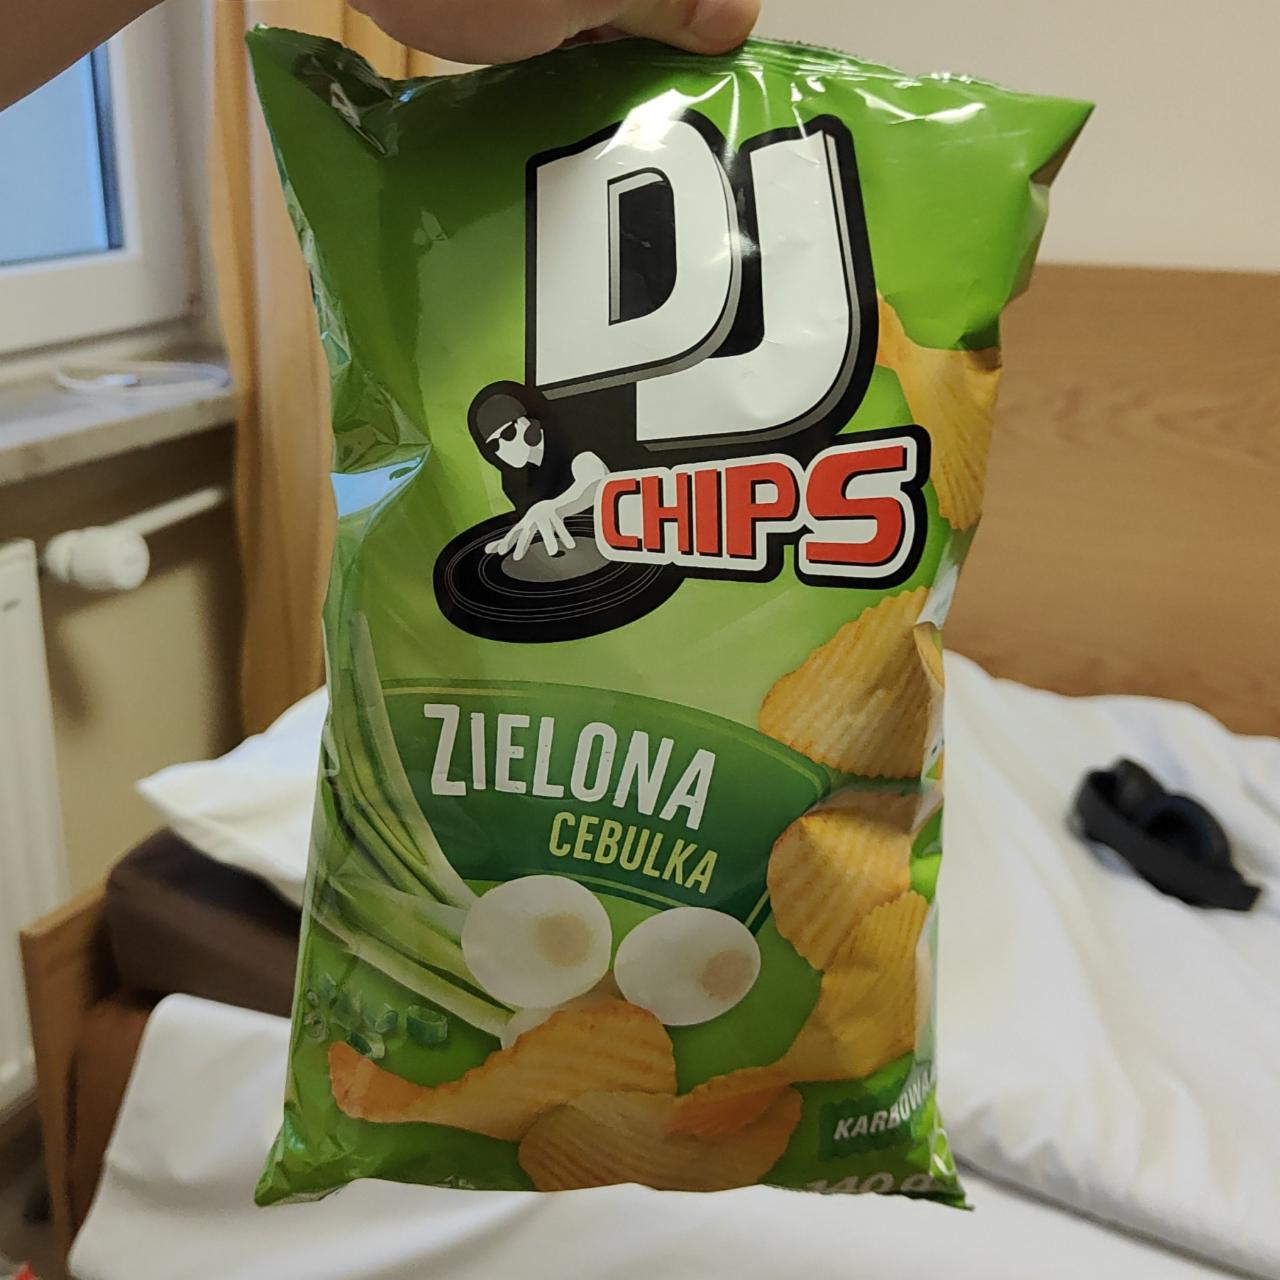 Zdjęcia - Chipsy zielona cebulka 140g DJ CHIPS